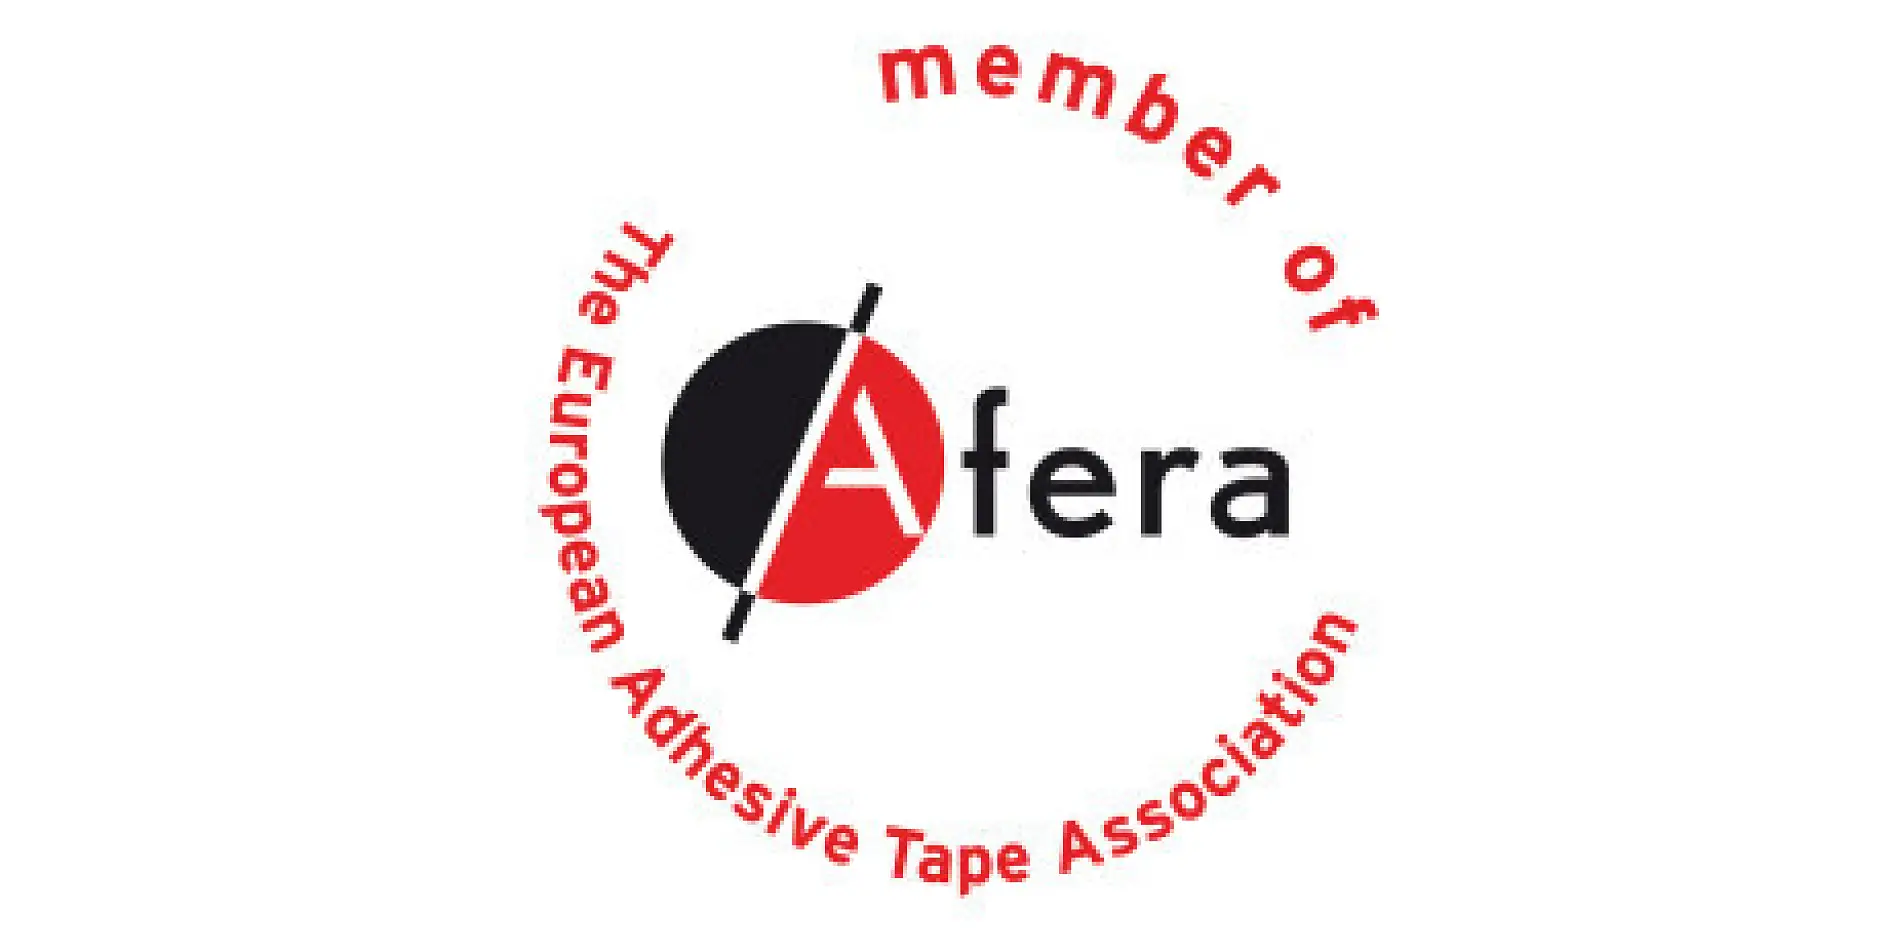 Tesa è membro di afera - l’Associazione dei produttori europei di nastri adesivi. Ne fanno parte produttori, fornitori di macchinari e materie prime, convertitori (come tipografi, tagliatori e plastificatori di nastro adesivo) e organizzazioni nazionali operative nel settore.